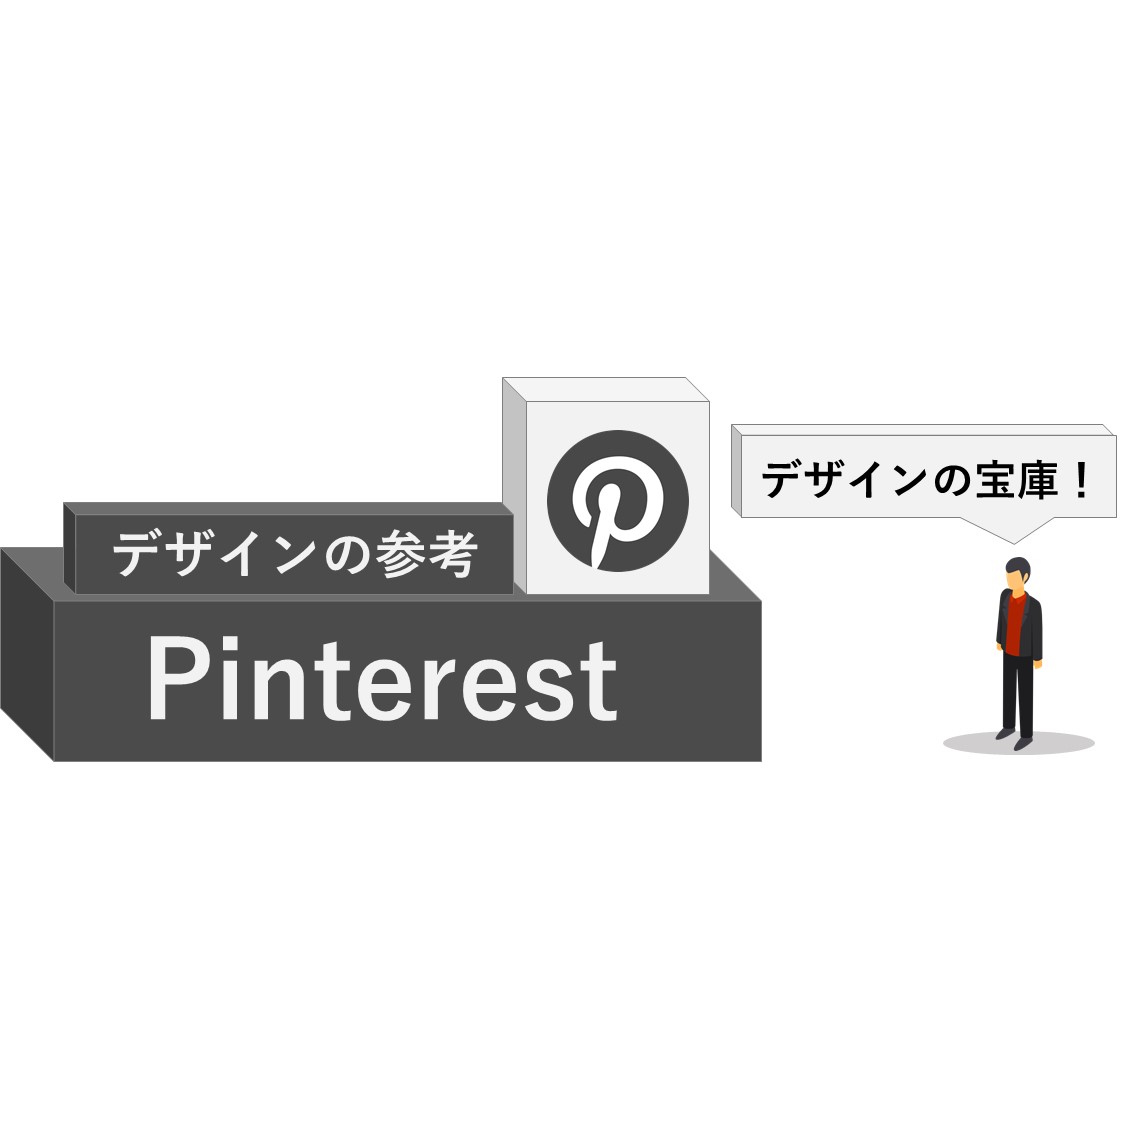 「【Pinterest】ミニマリストが学ぶデザイン・イラストはここにあり」のアイキャッチ画像